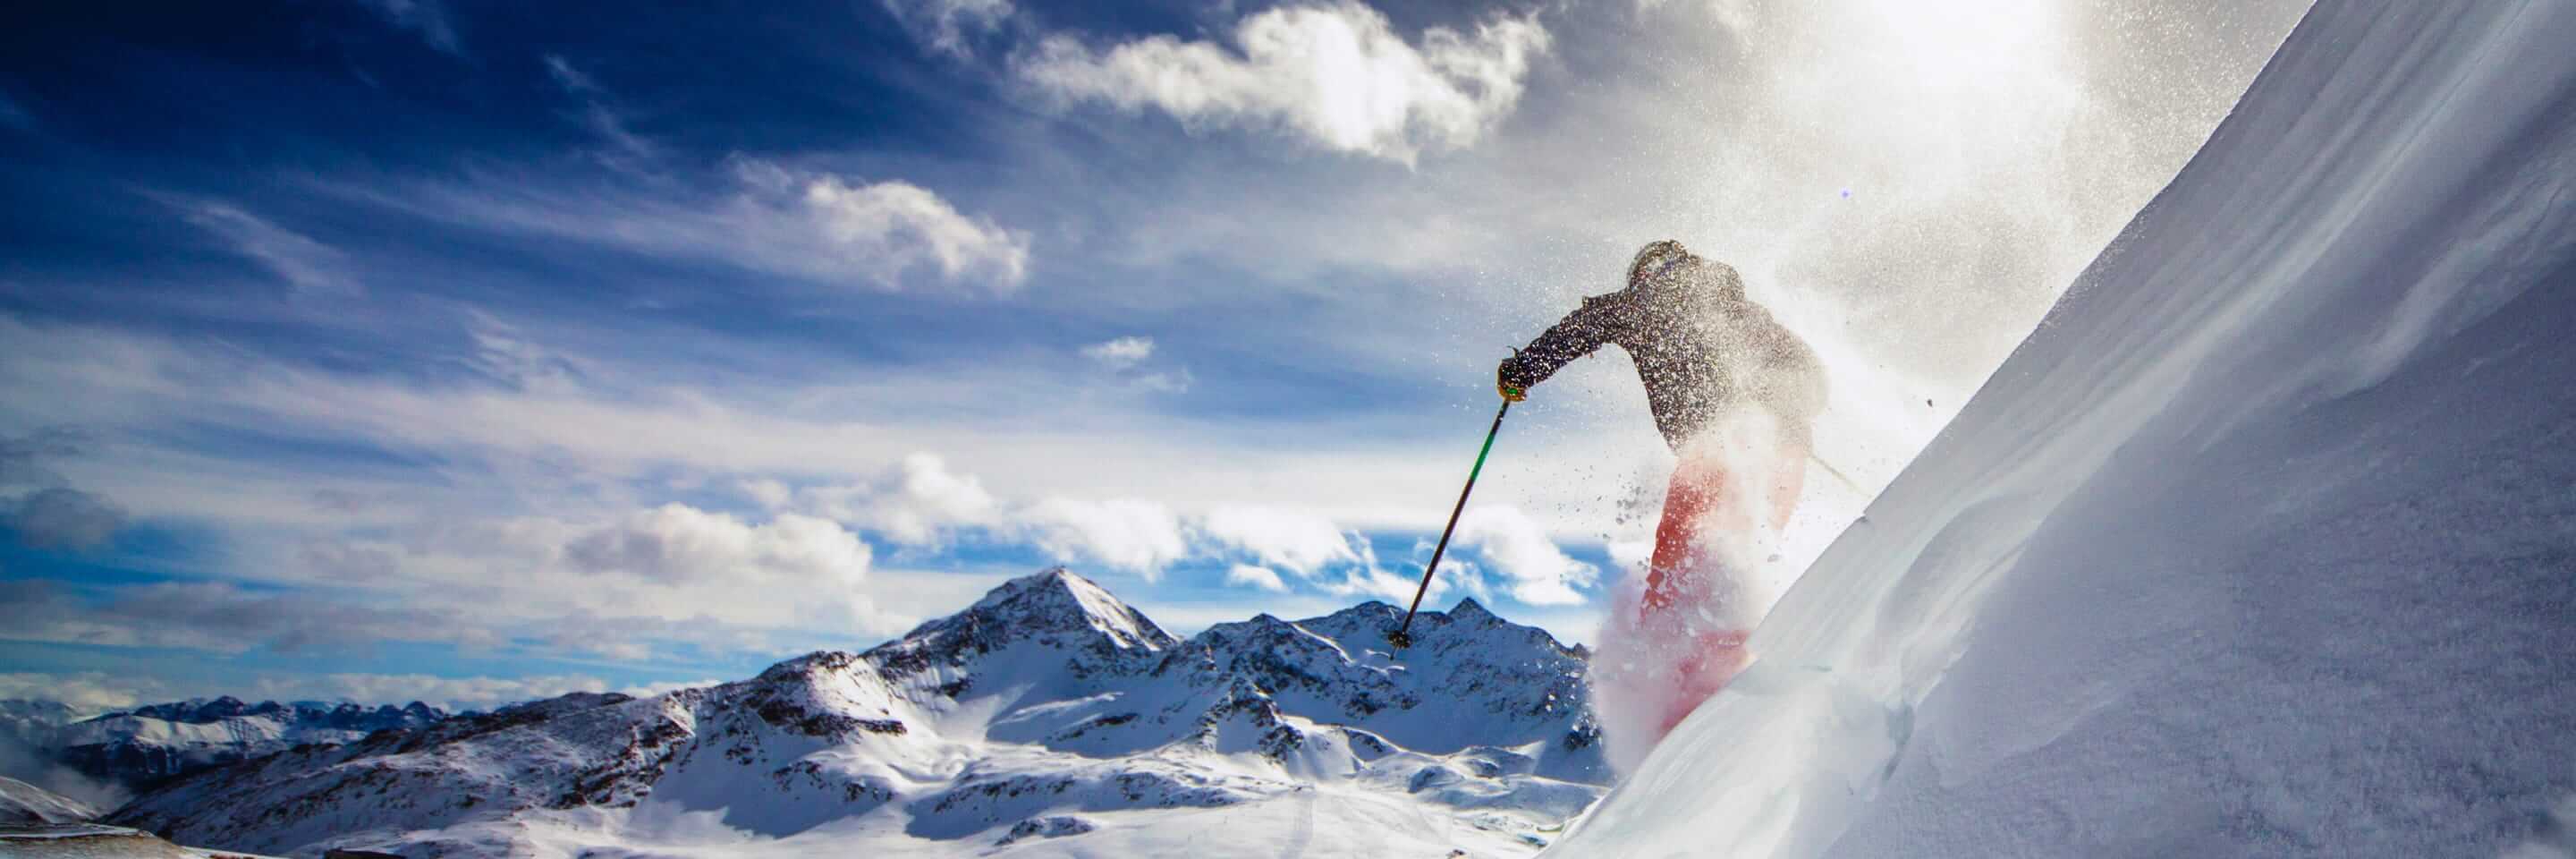 Un skieur que descend une pente abrupte.